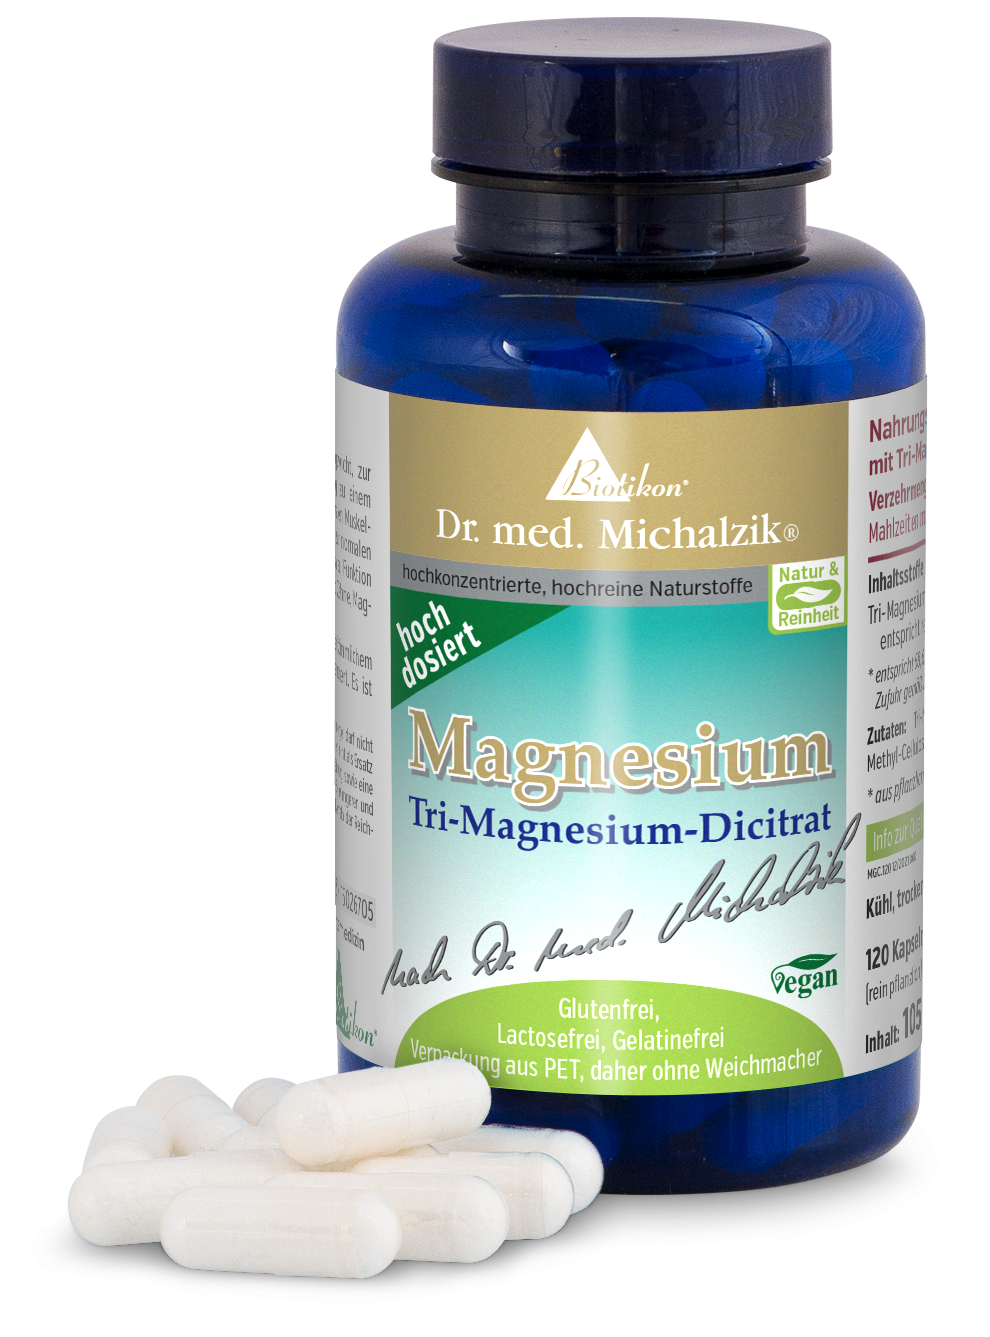 Magnesio - dicitrato di tri-magnesio